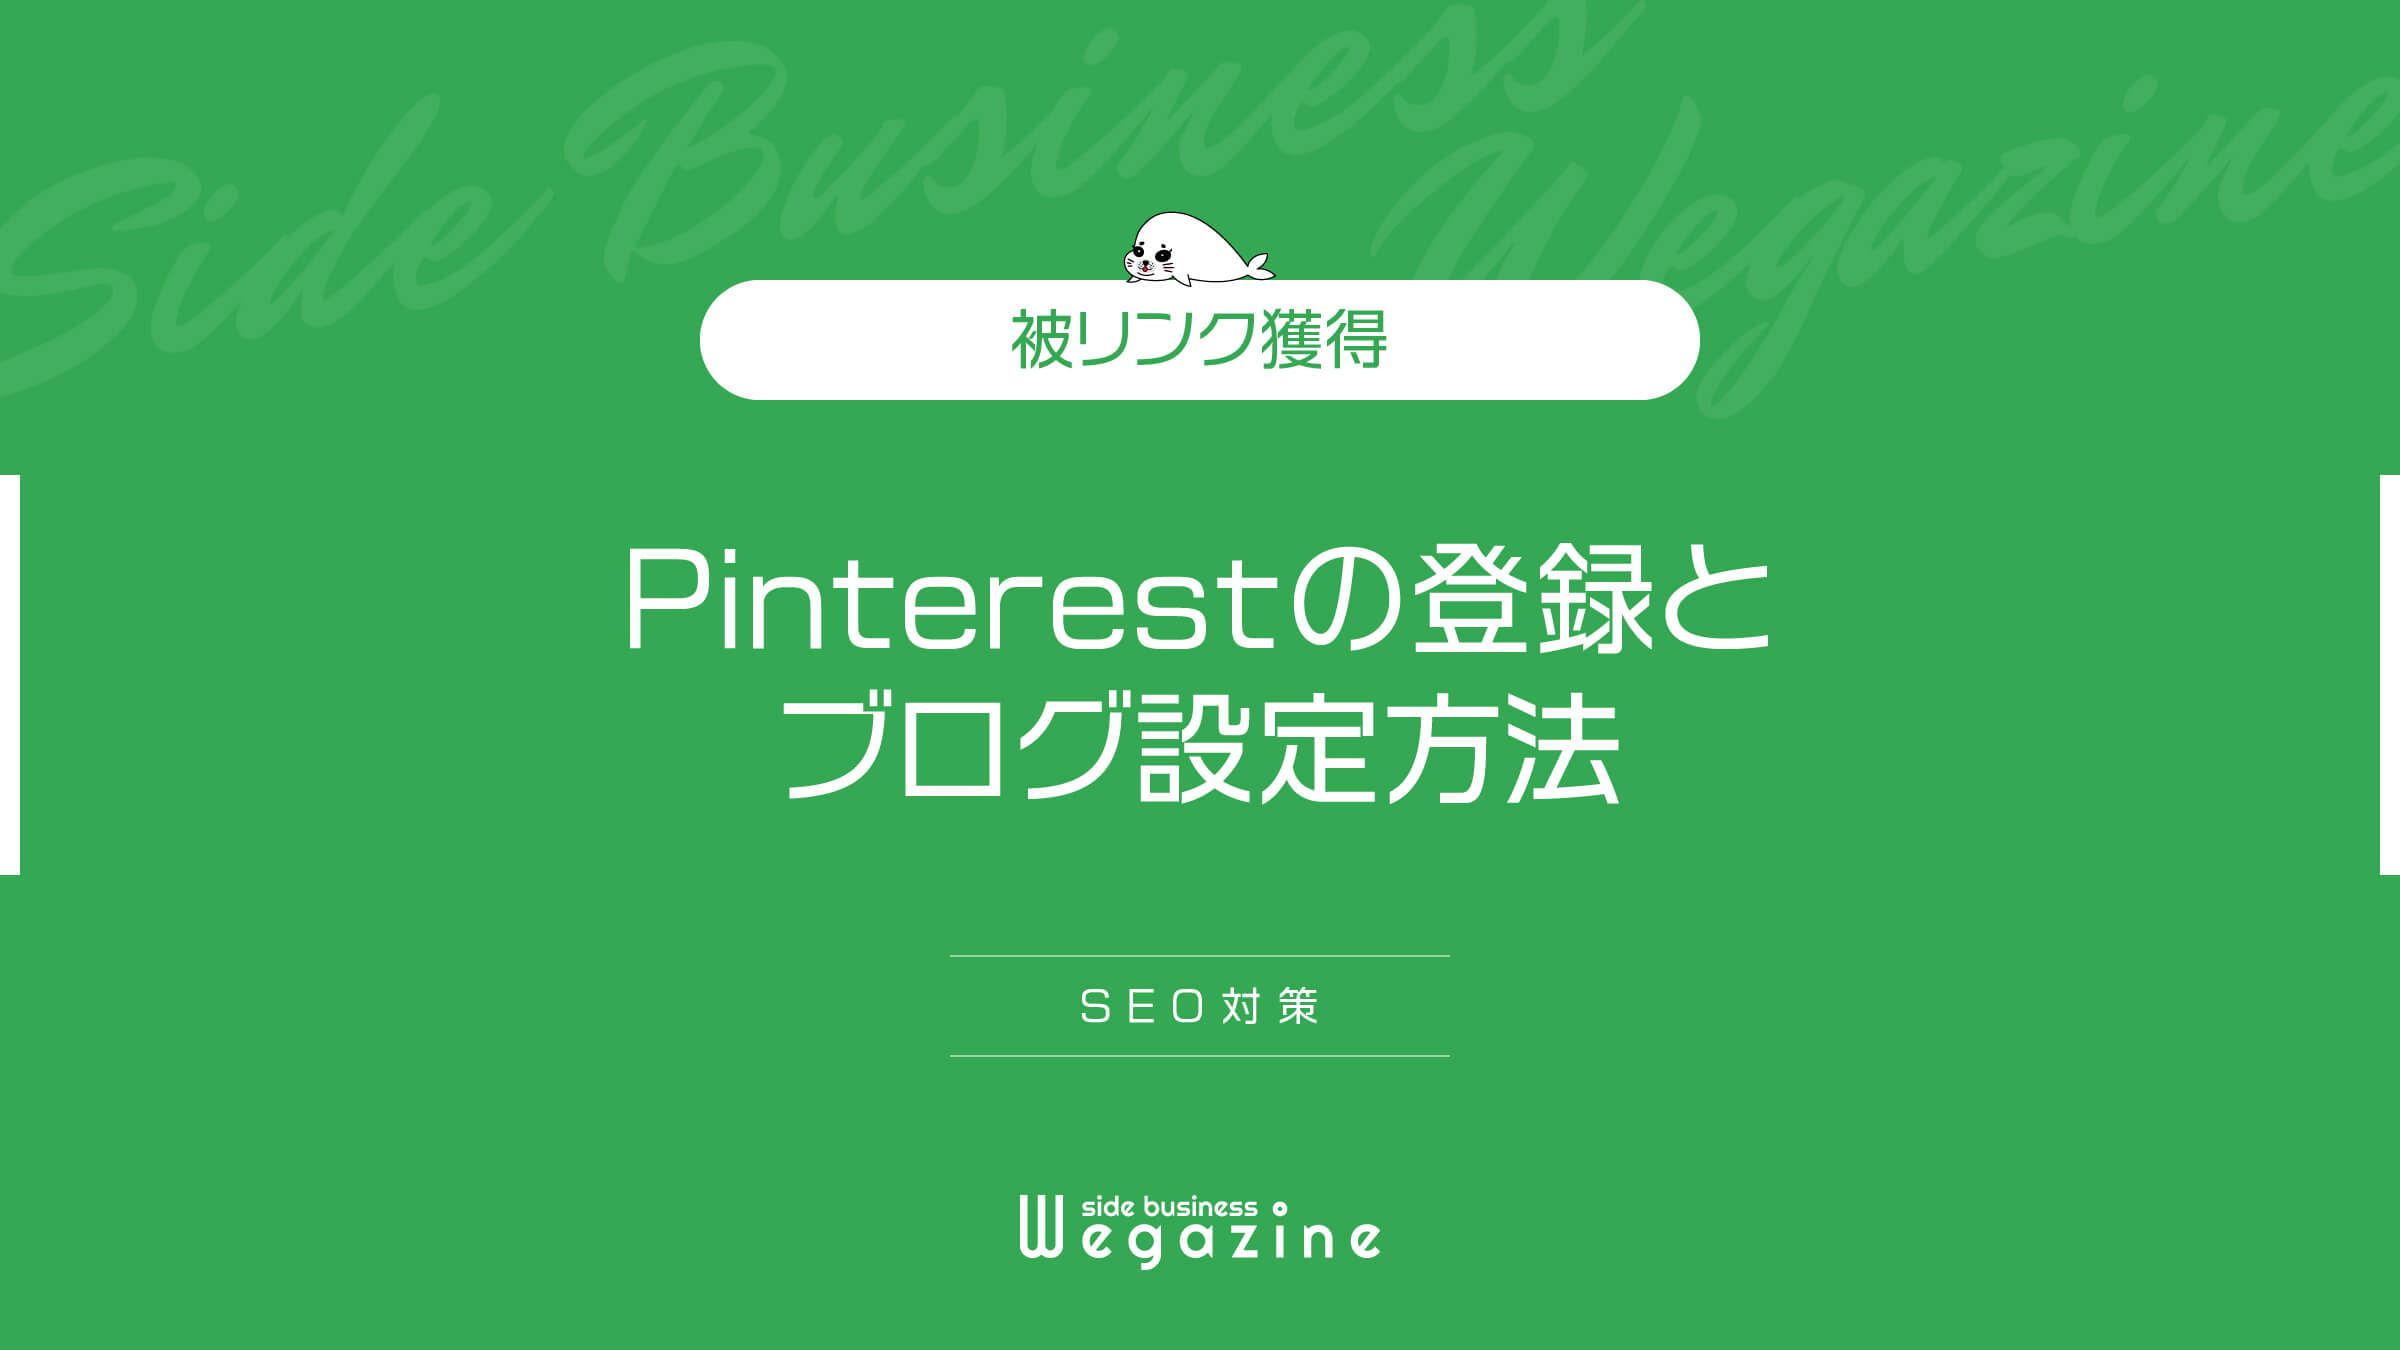 【被リンク獲得】Pinterest(ピンタレスト)の登録とブログ設定方法(SEO対策)